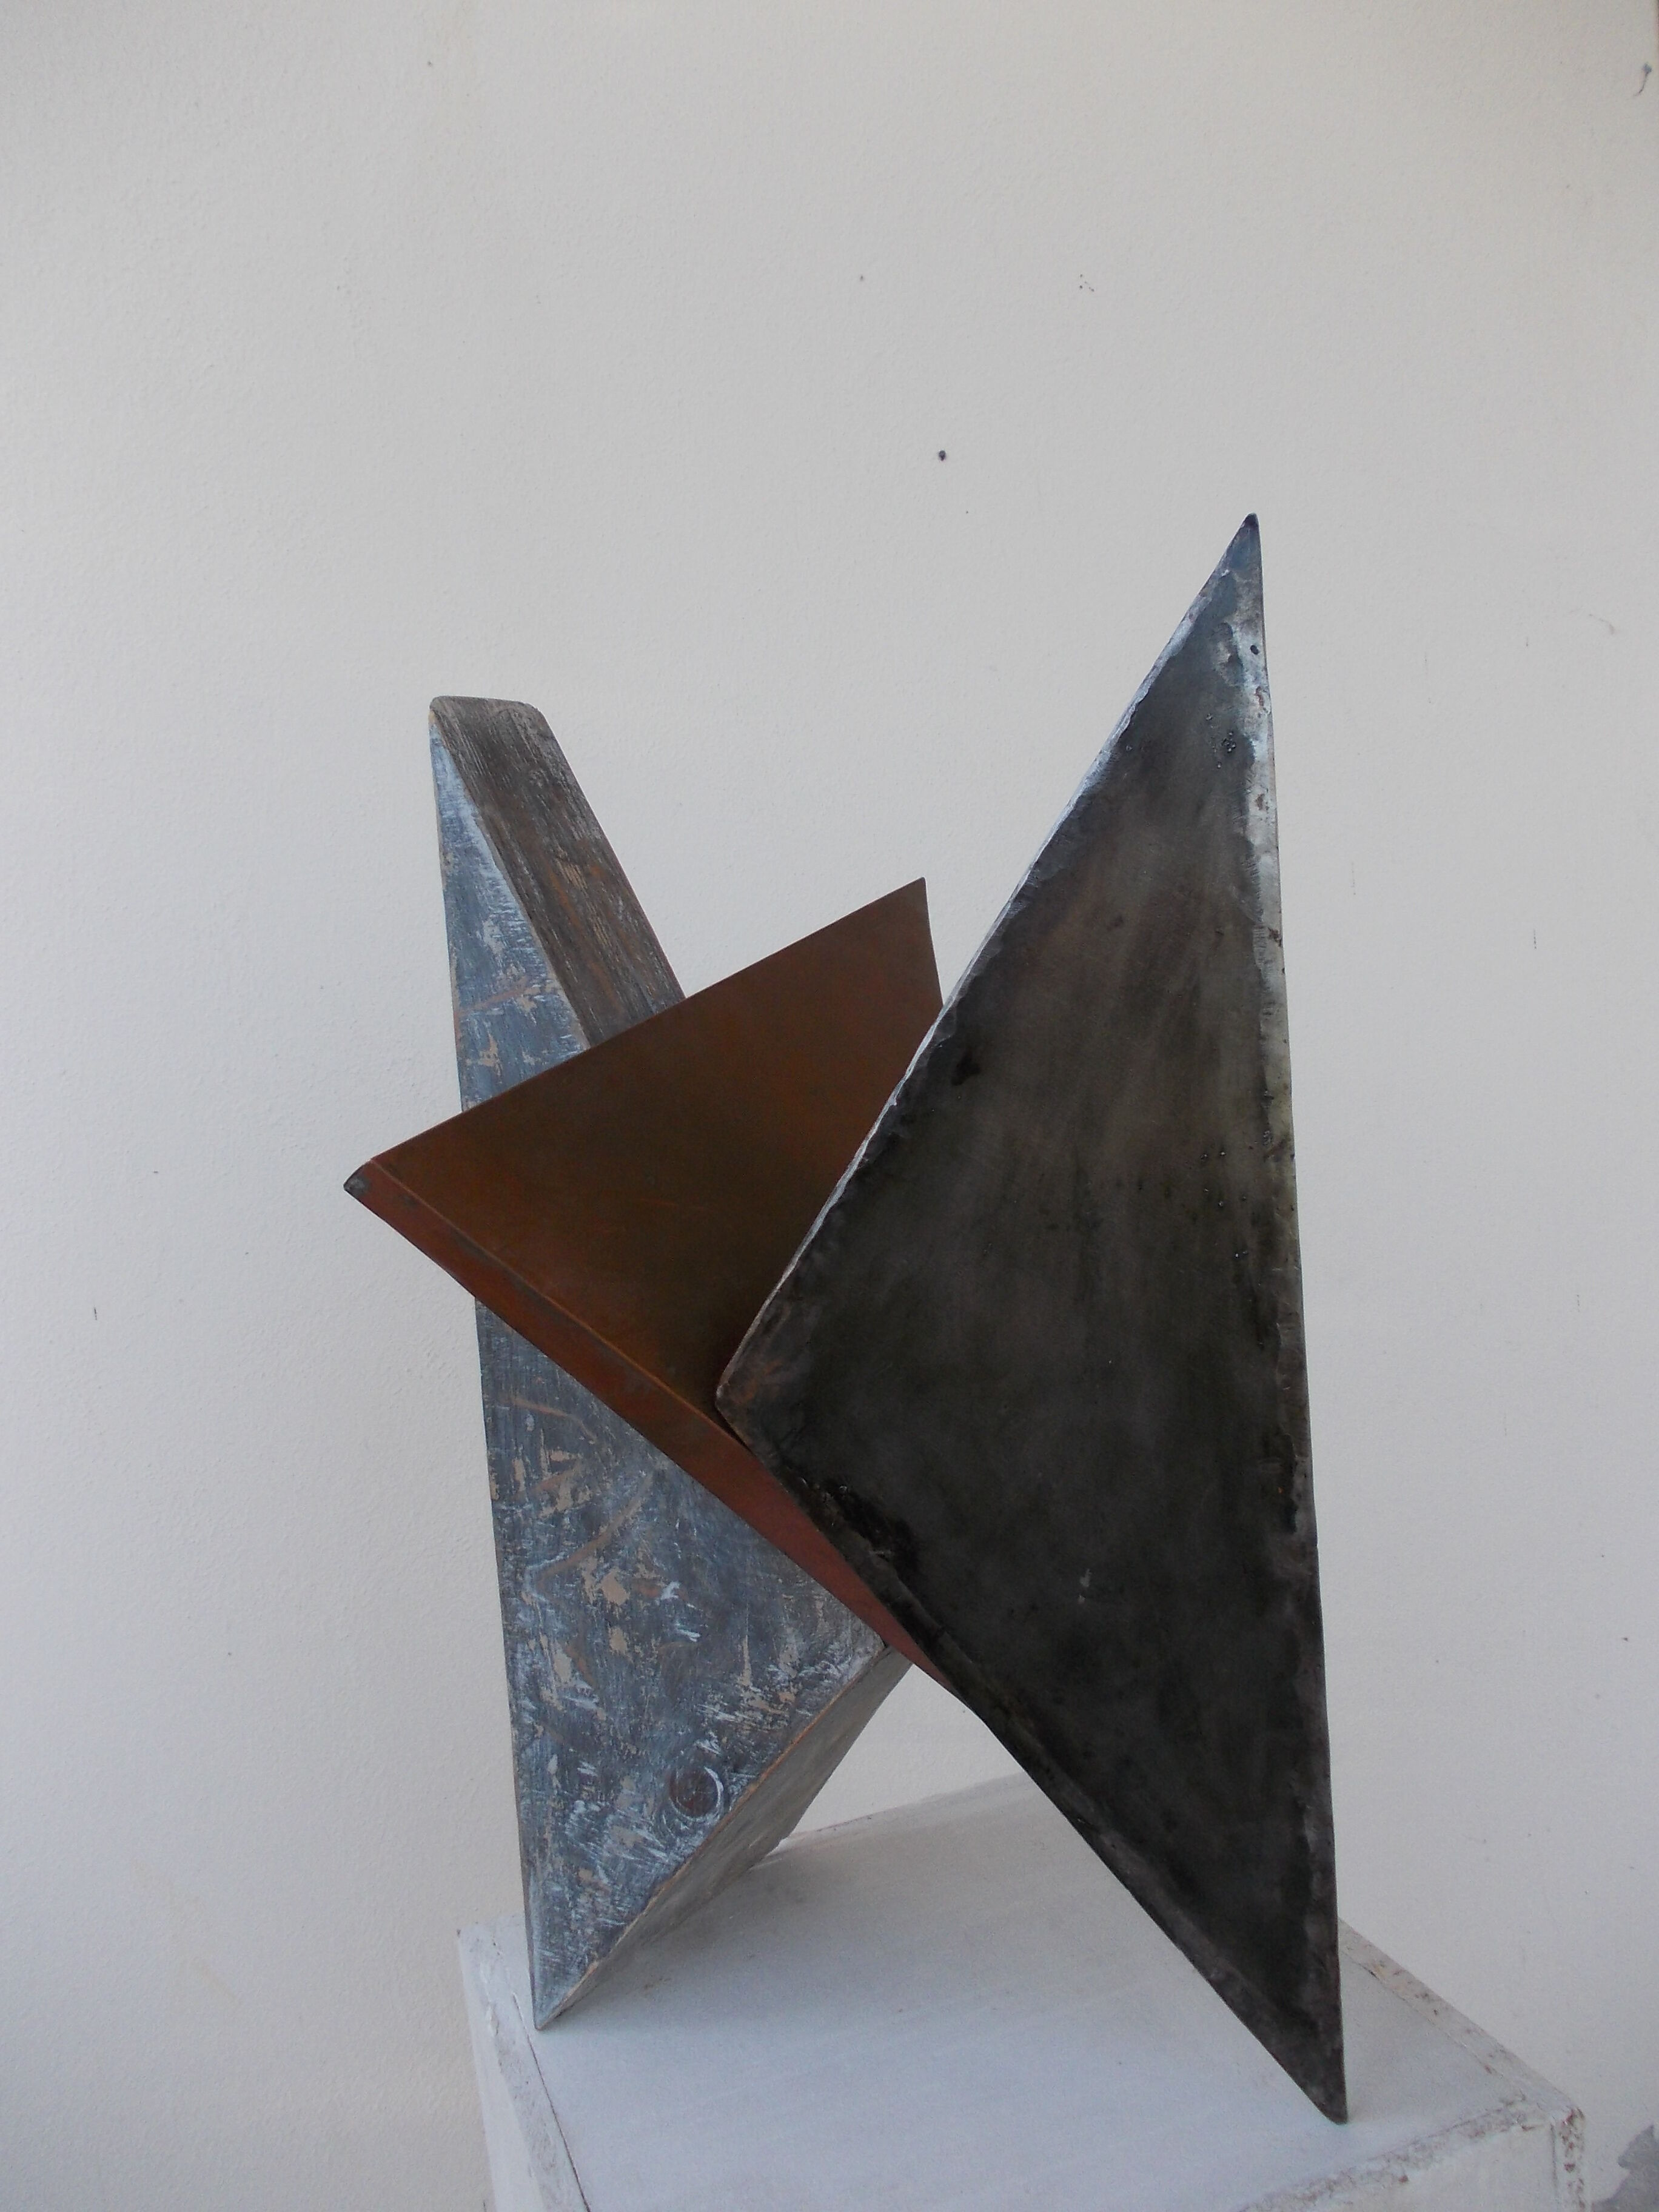 Skulptur "Dreiklang" (1997)